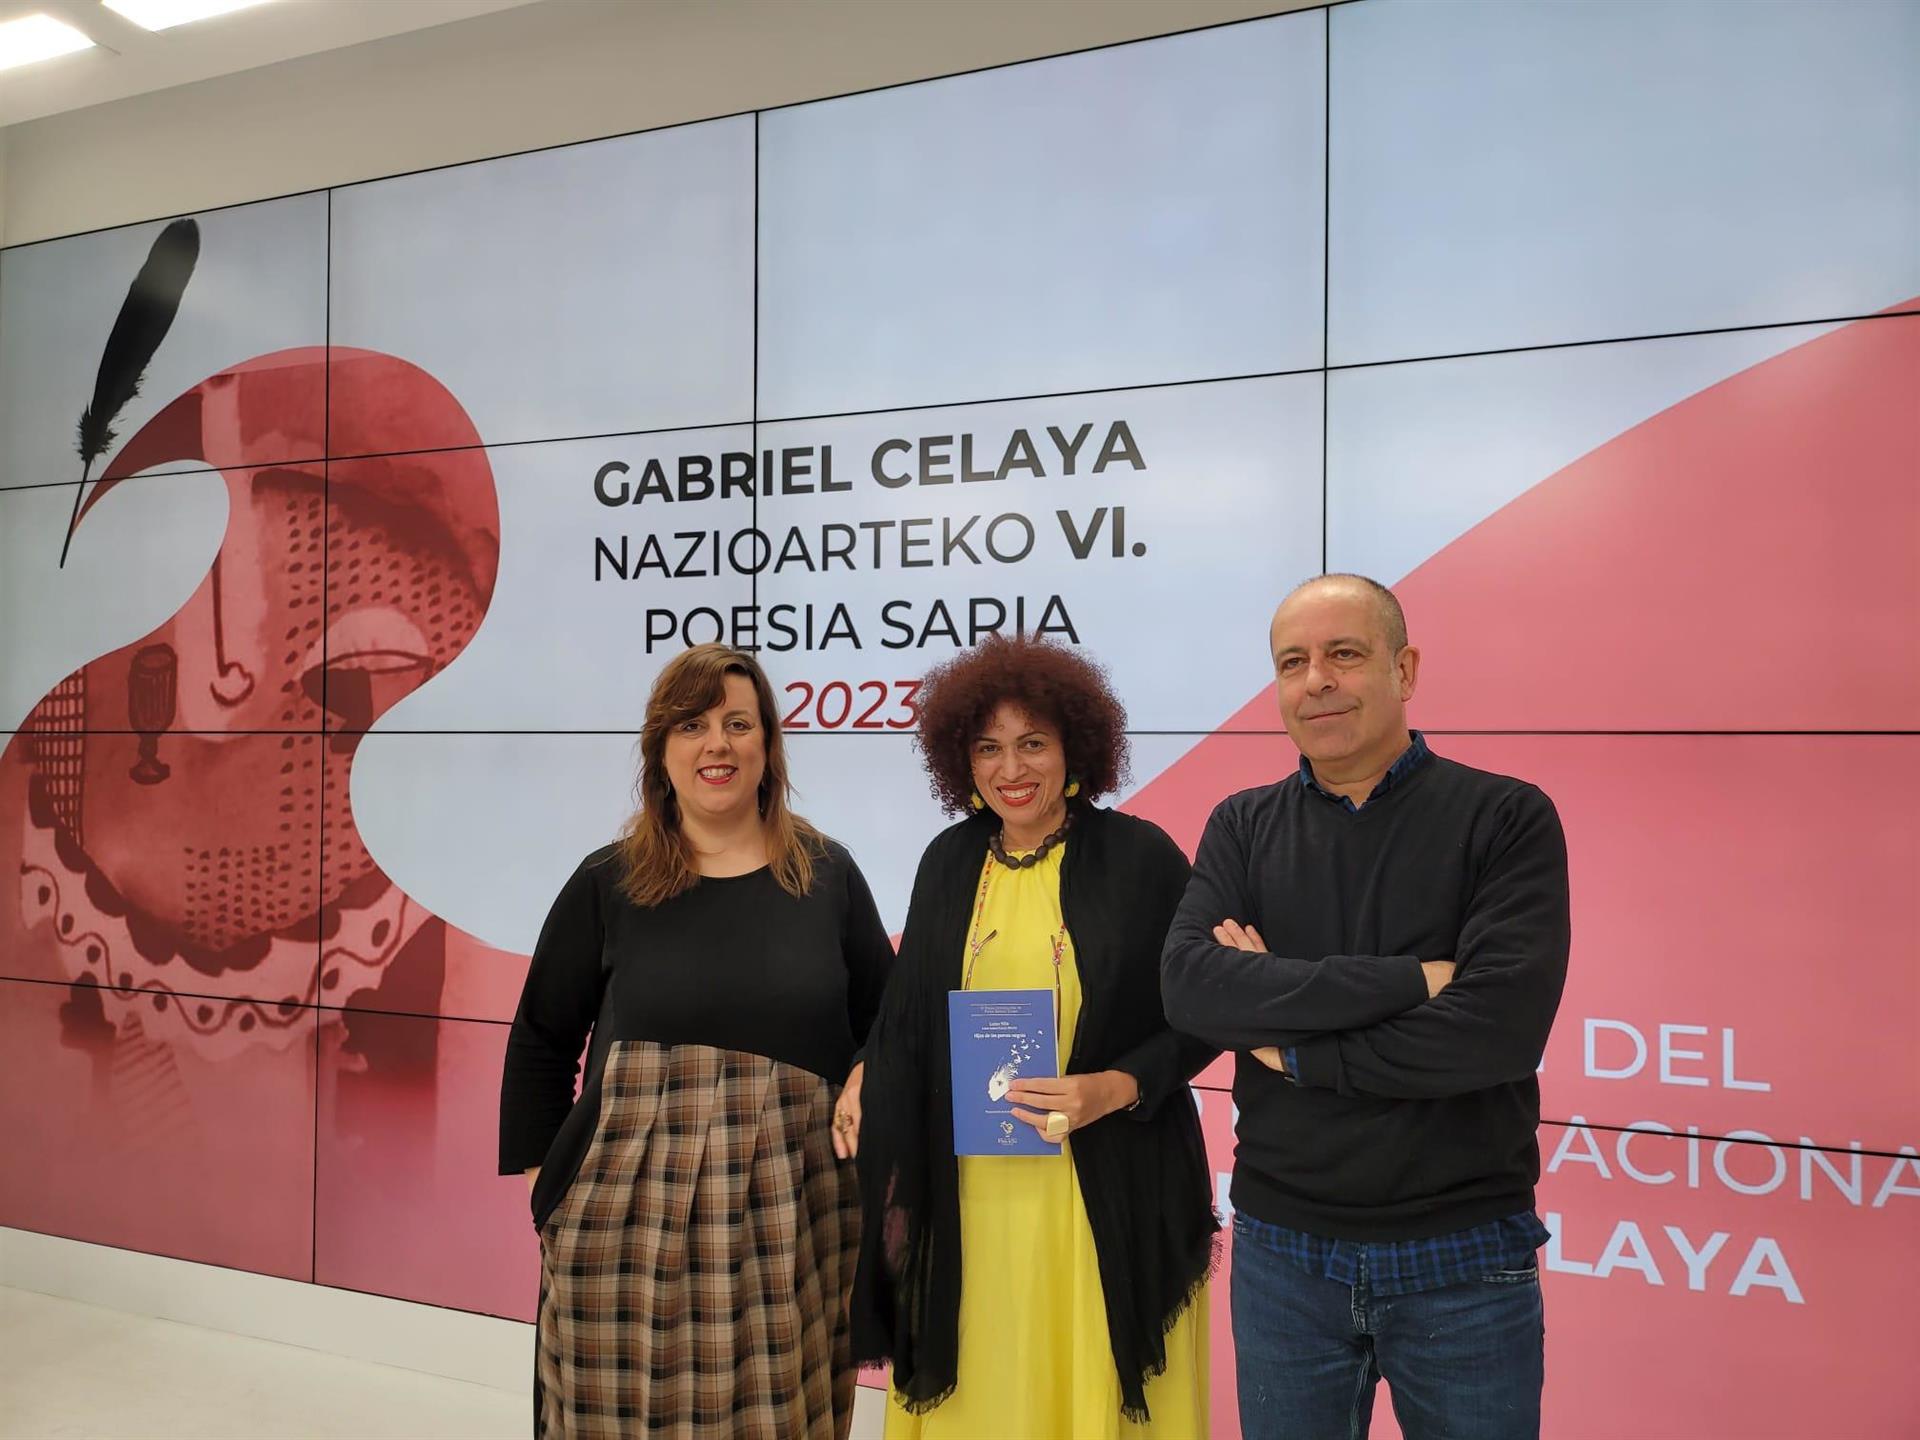 La colombiana Luisa Villa recibió el Premio de Poesía Gabriel Celaya